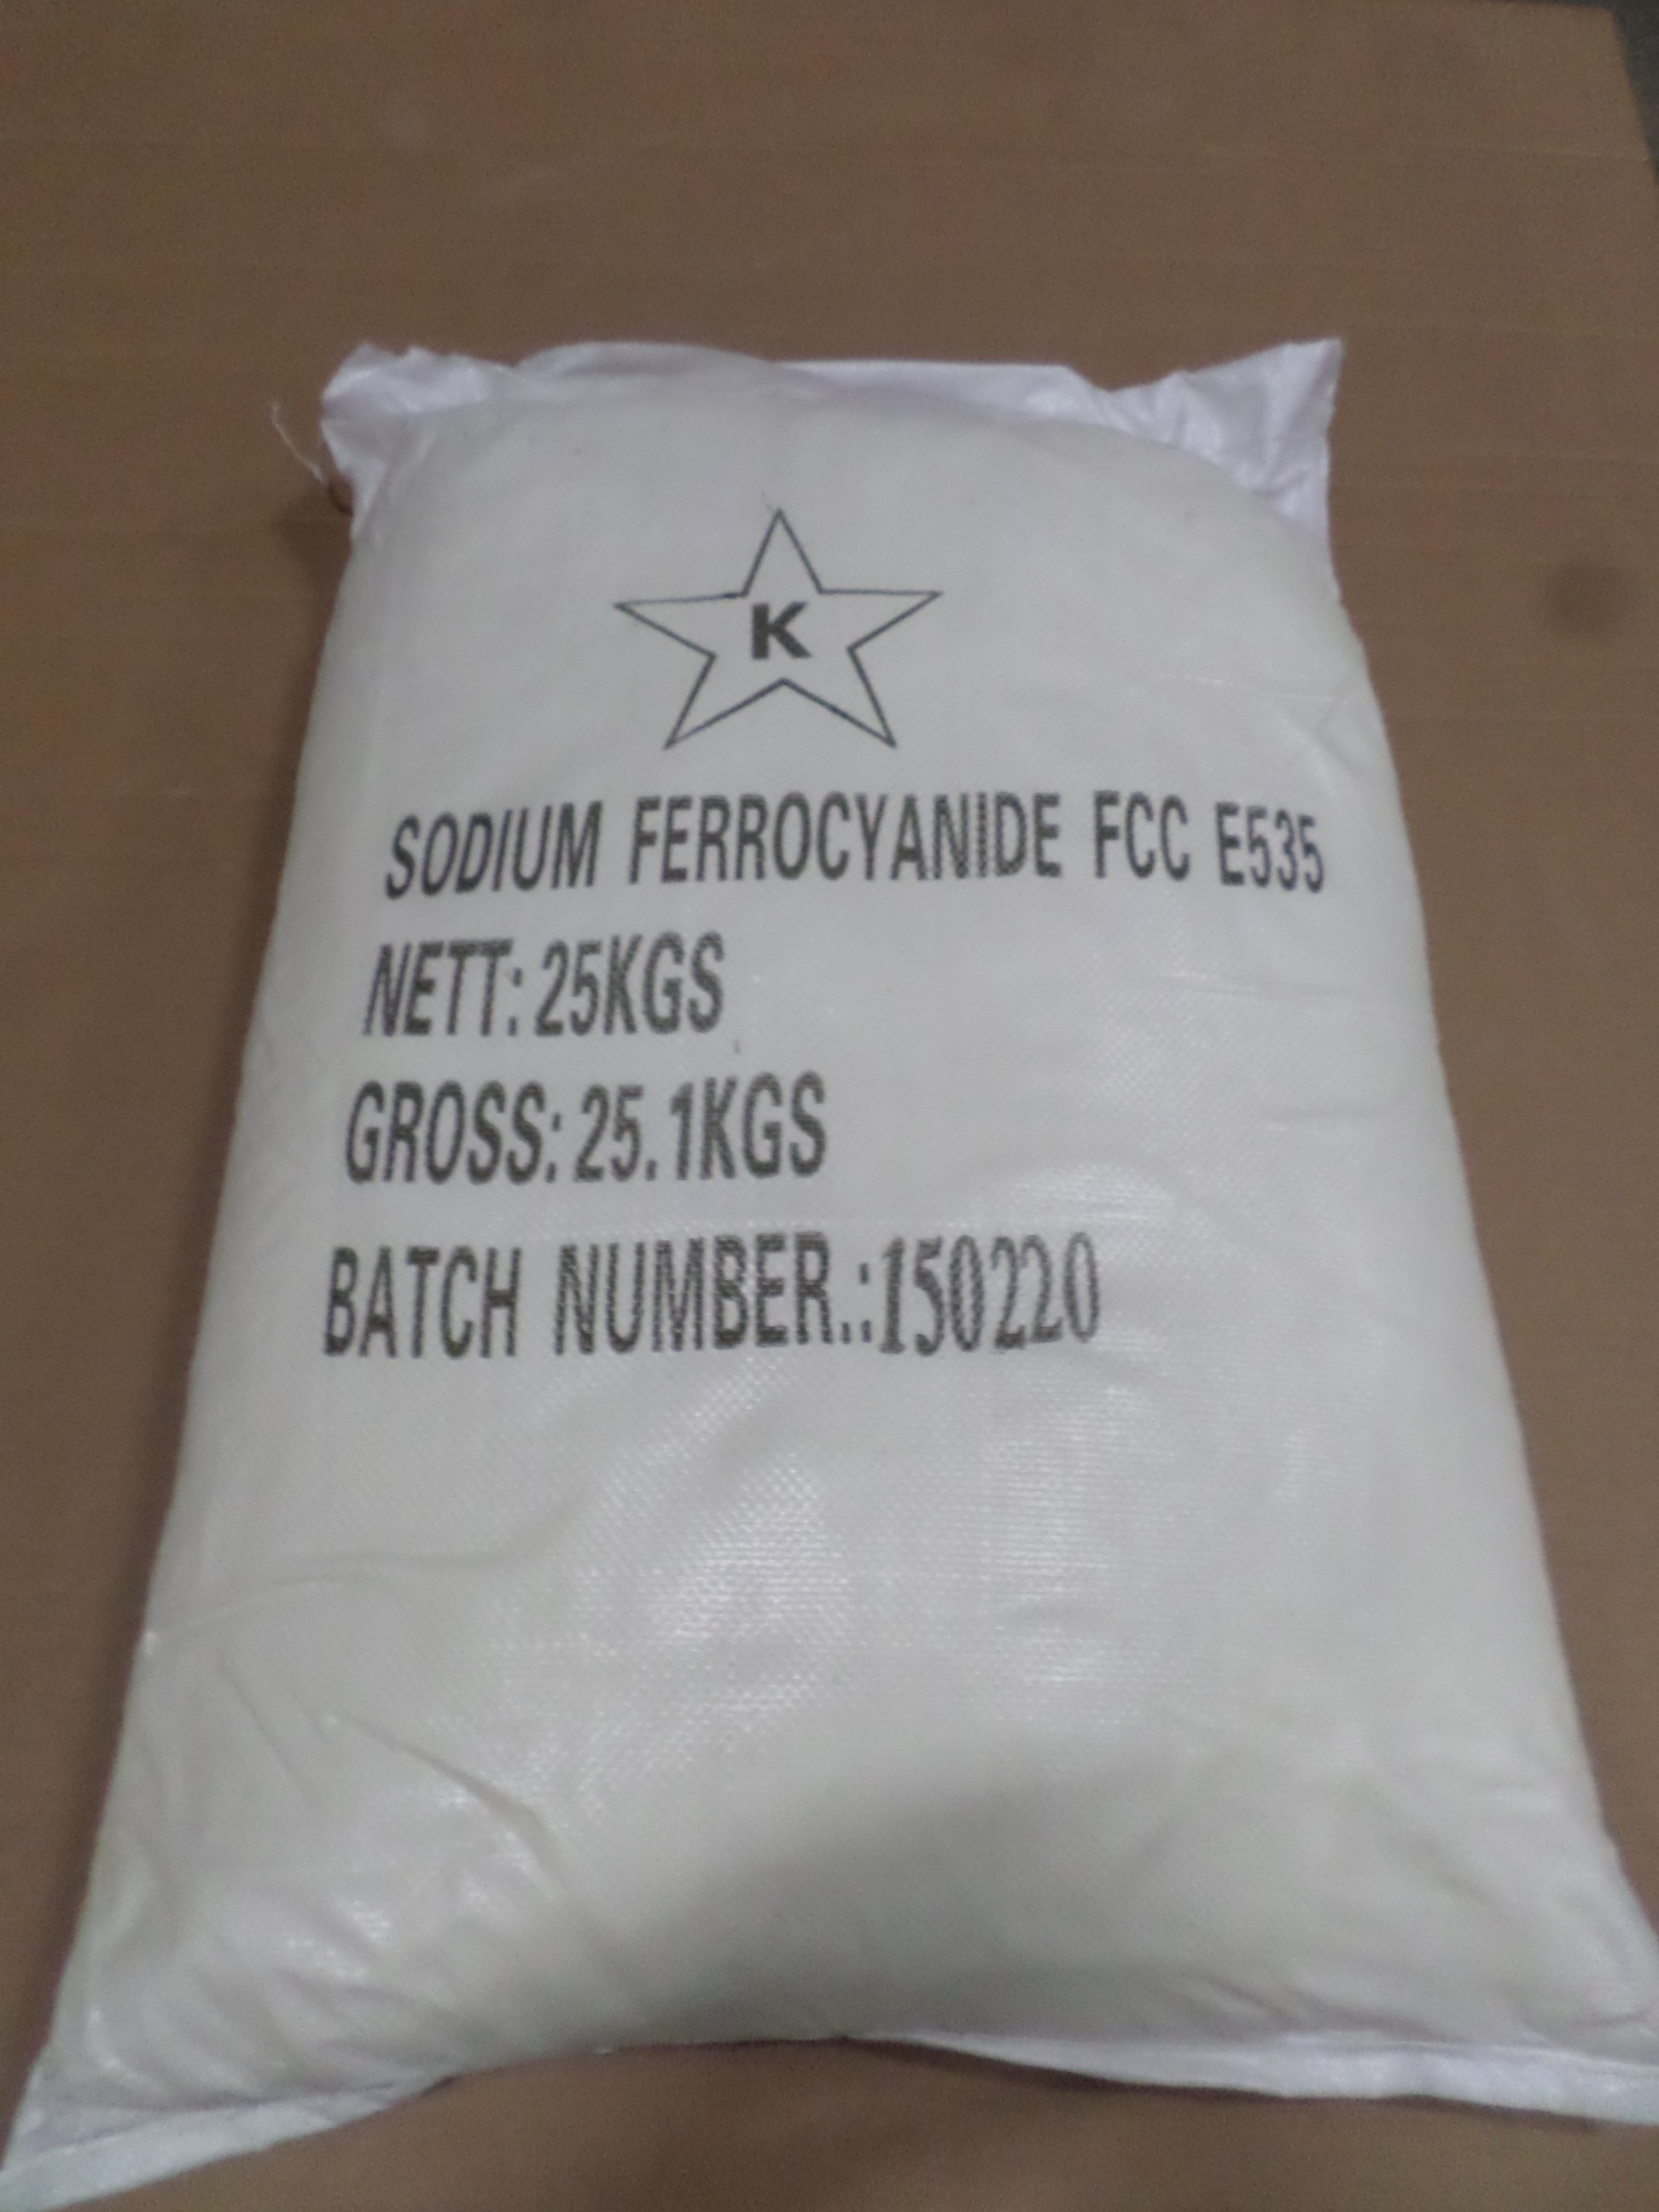 Sodium ferrocyanide fcc